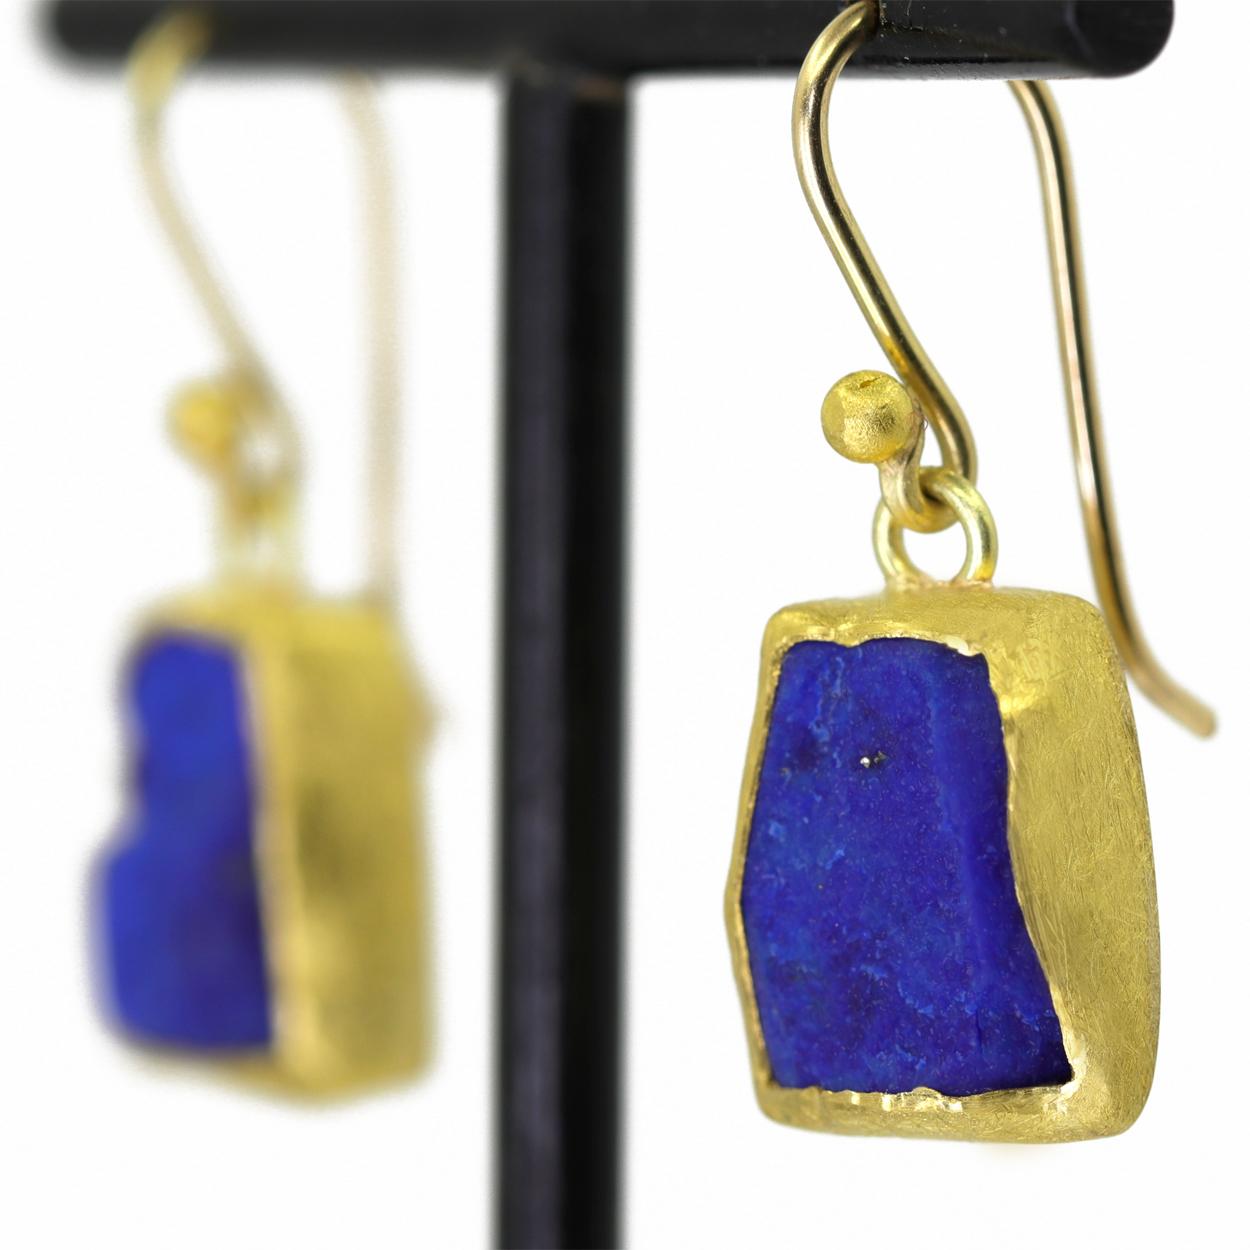 One of a Kind Rough Lapis Lazuli Drop Earrings handgefertigt von renommierten Schmuck-Künstlerin Petra Class präsentiert eine schöne Reihe von aufeinander abgestimmten rohen königsblauen Lapislazuli, einzeln in massivem 22k Gelbgold mit dem